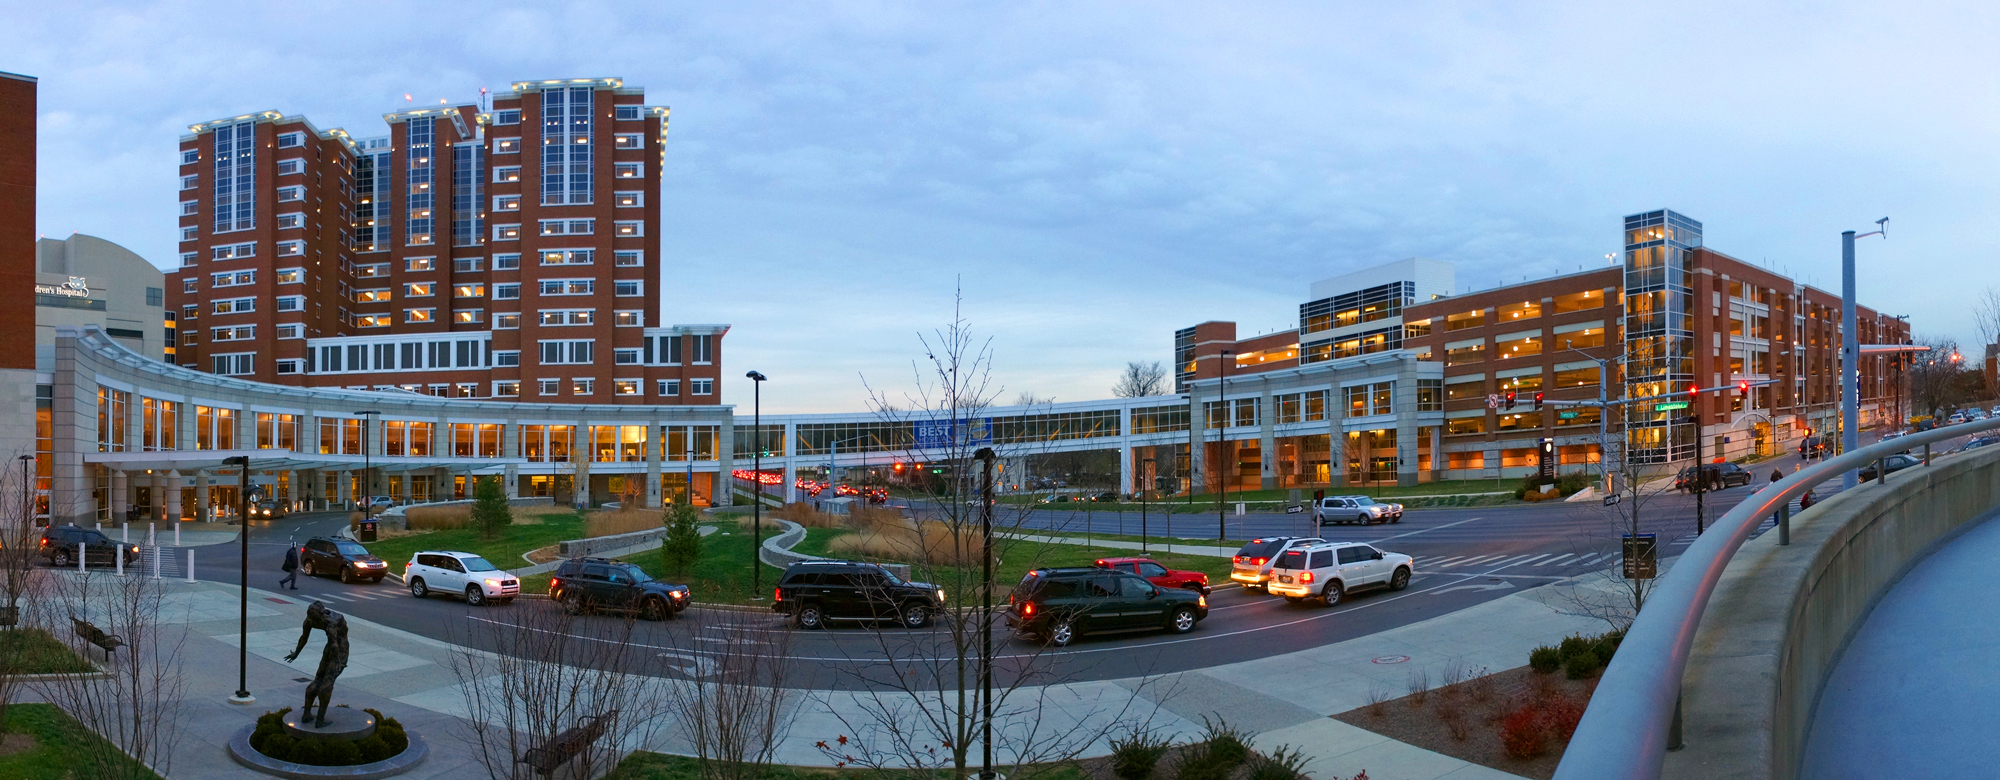 Albert B. Chandler Hospital street view.